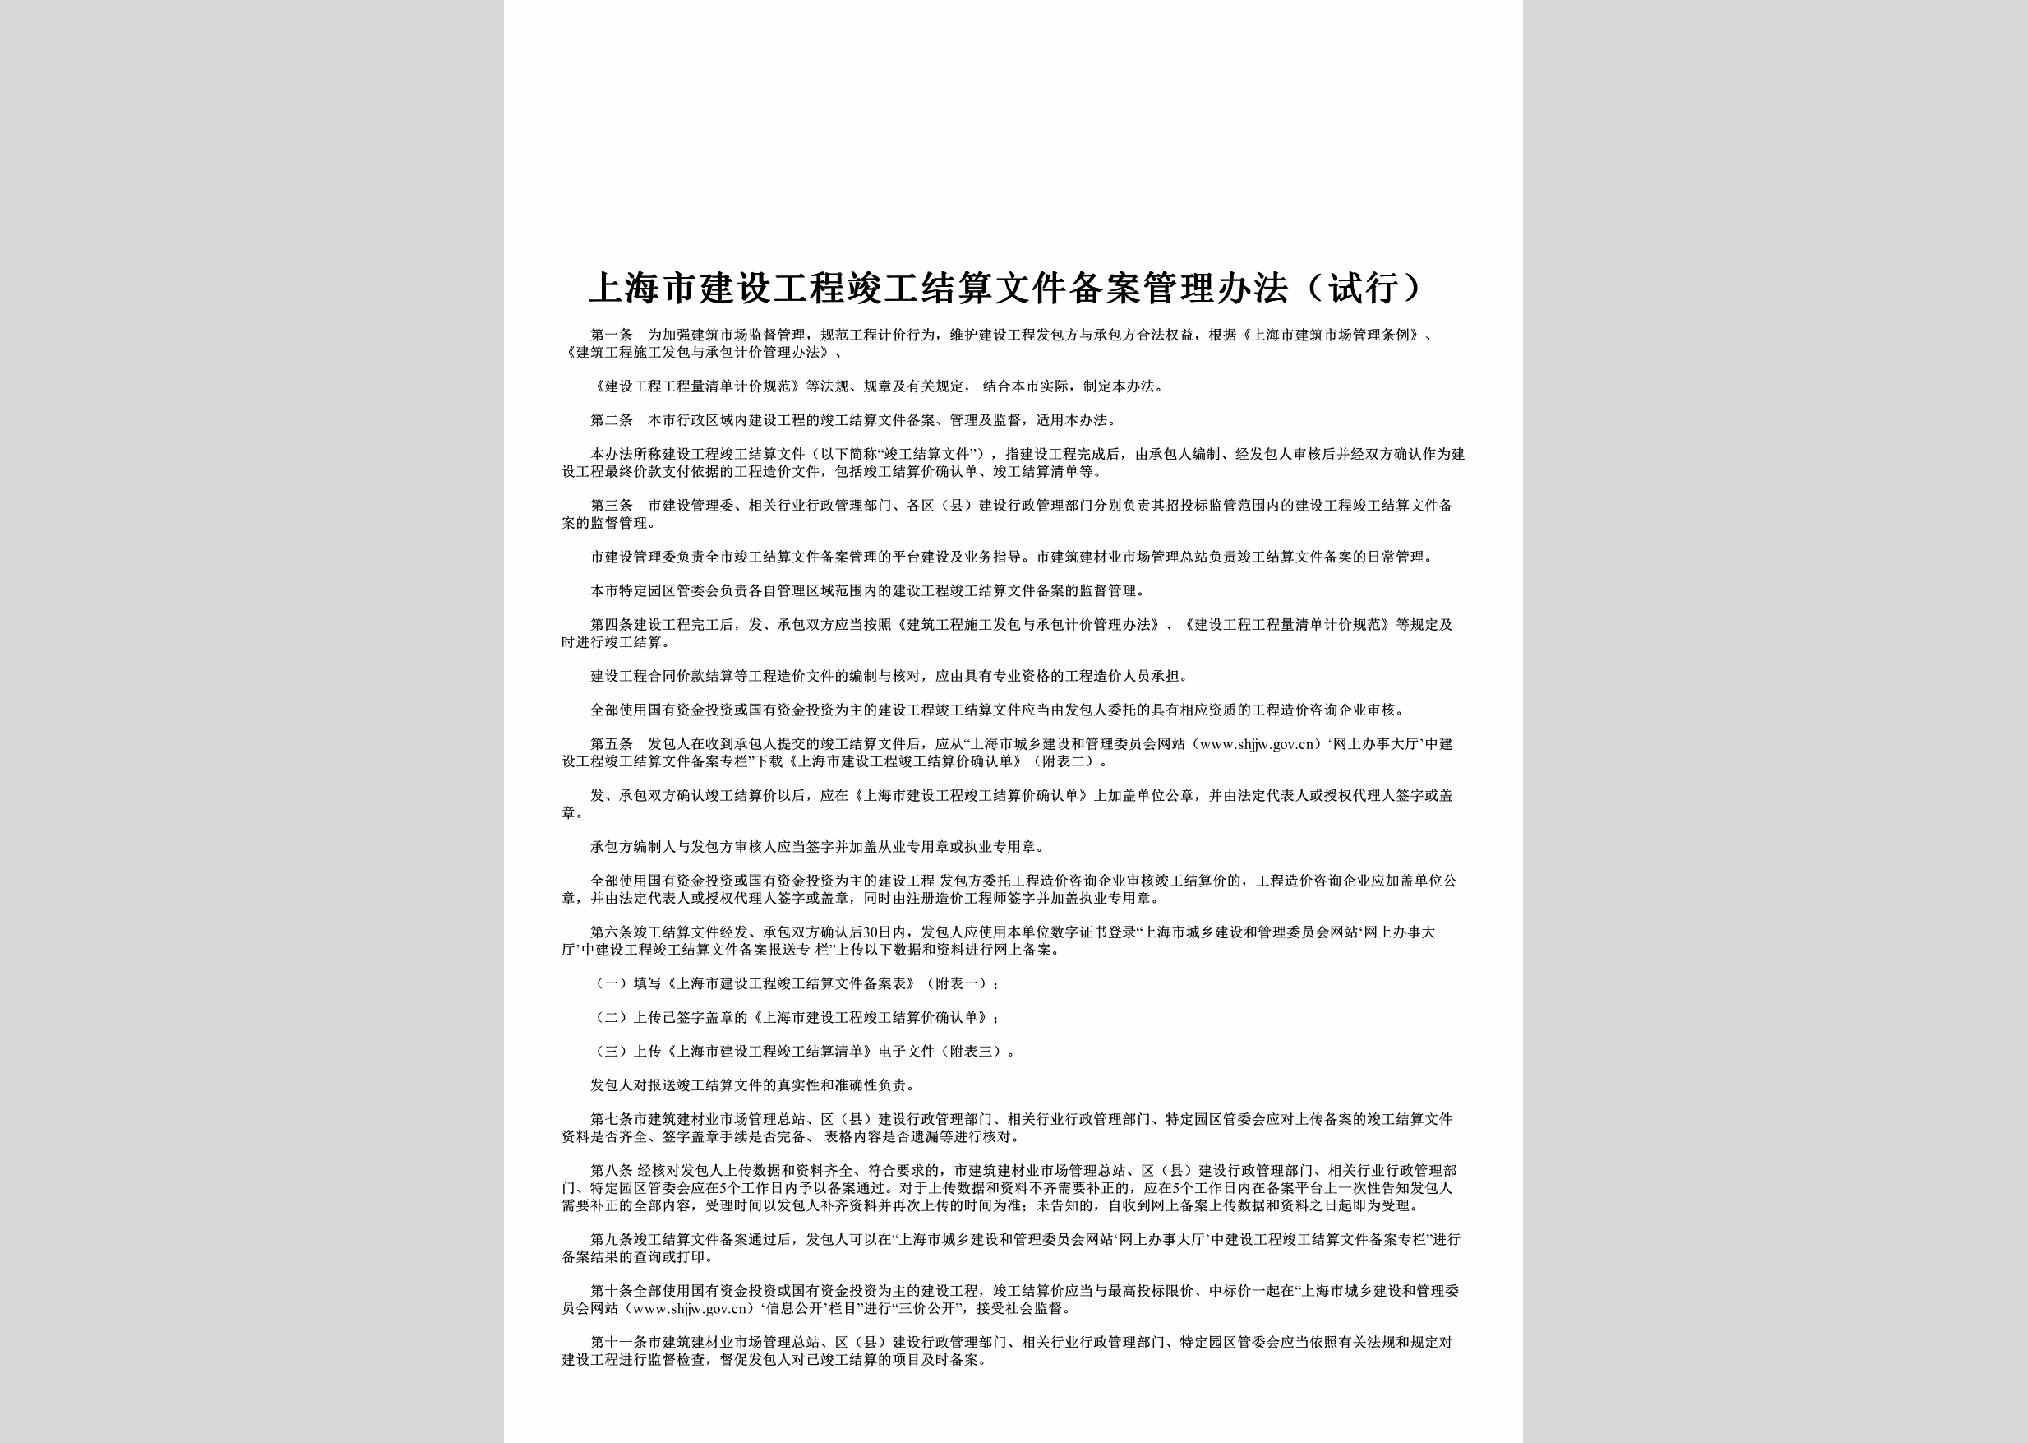 SH-JGWJGLBF-2017：上海市建设工程竣工结算文件备案管理办法（试行）